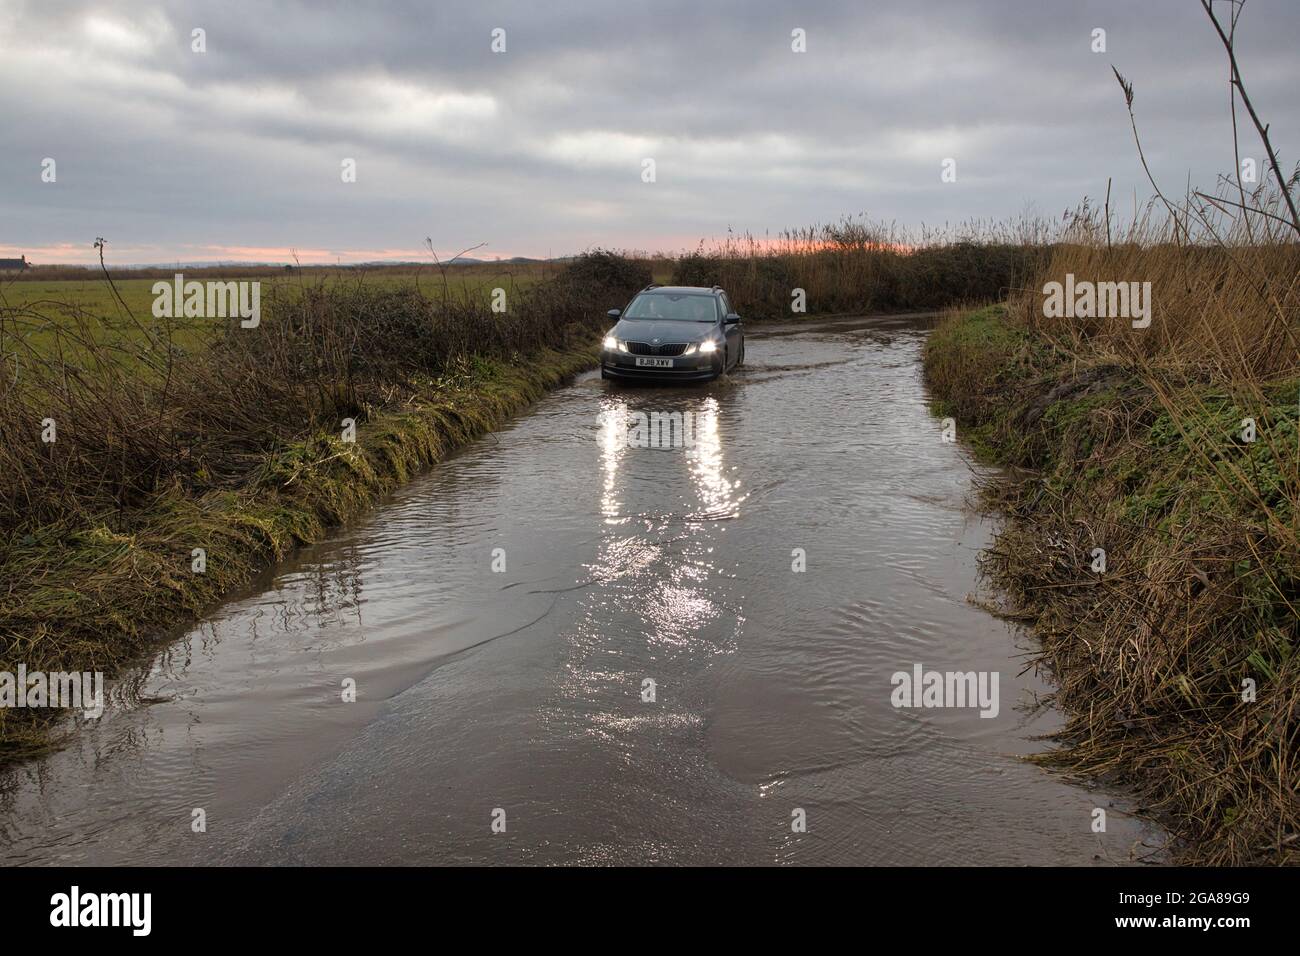 Eine überflutete Straße auf dem Land bei Braunton in North Devon, England, Großbritannien, mit einem Auto, das gerade durchfahren wird Stockfoto